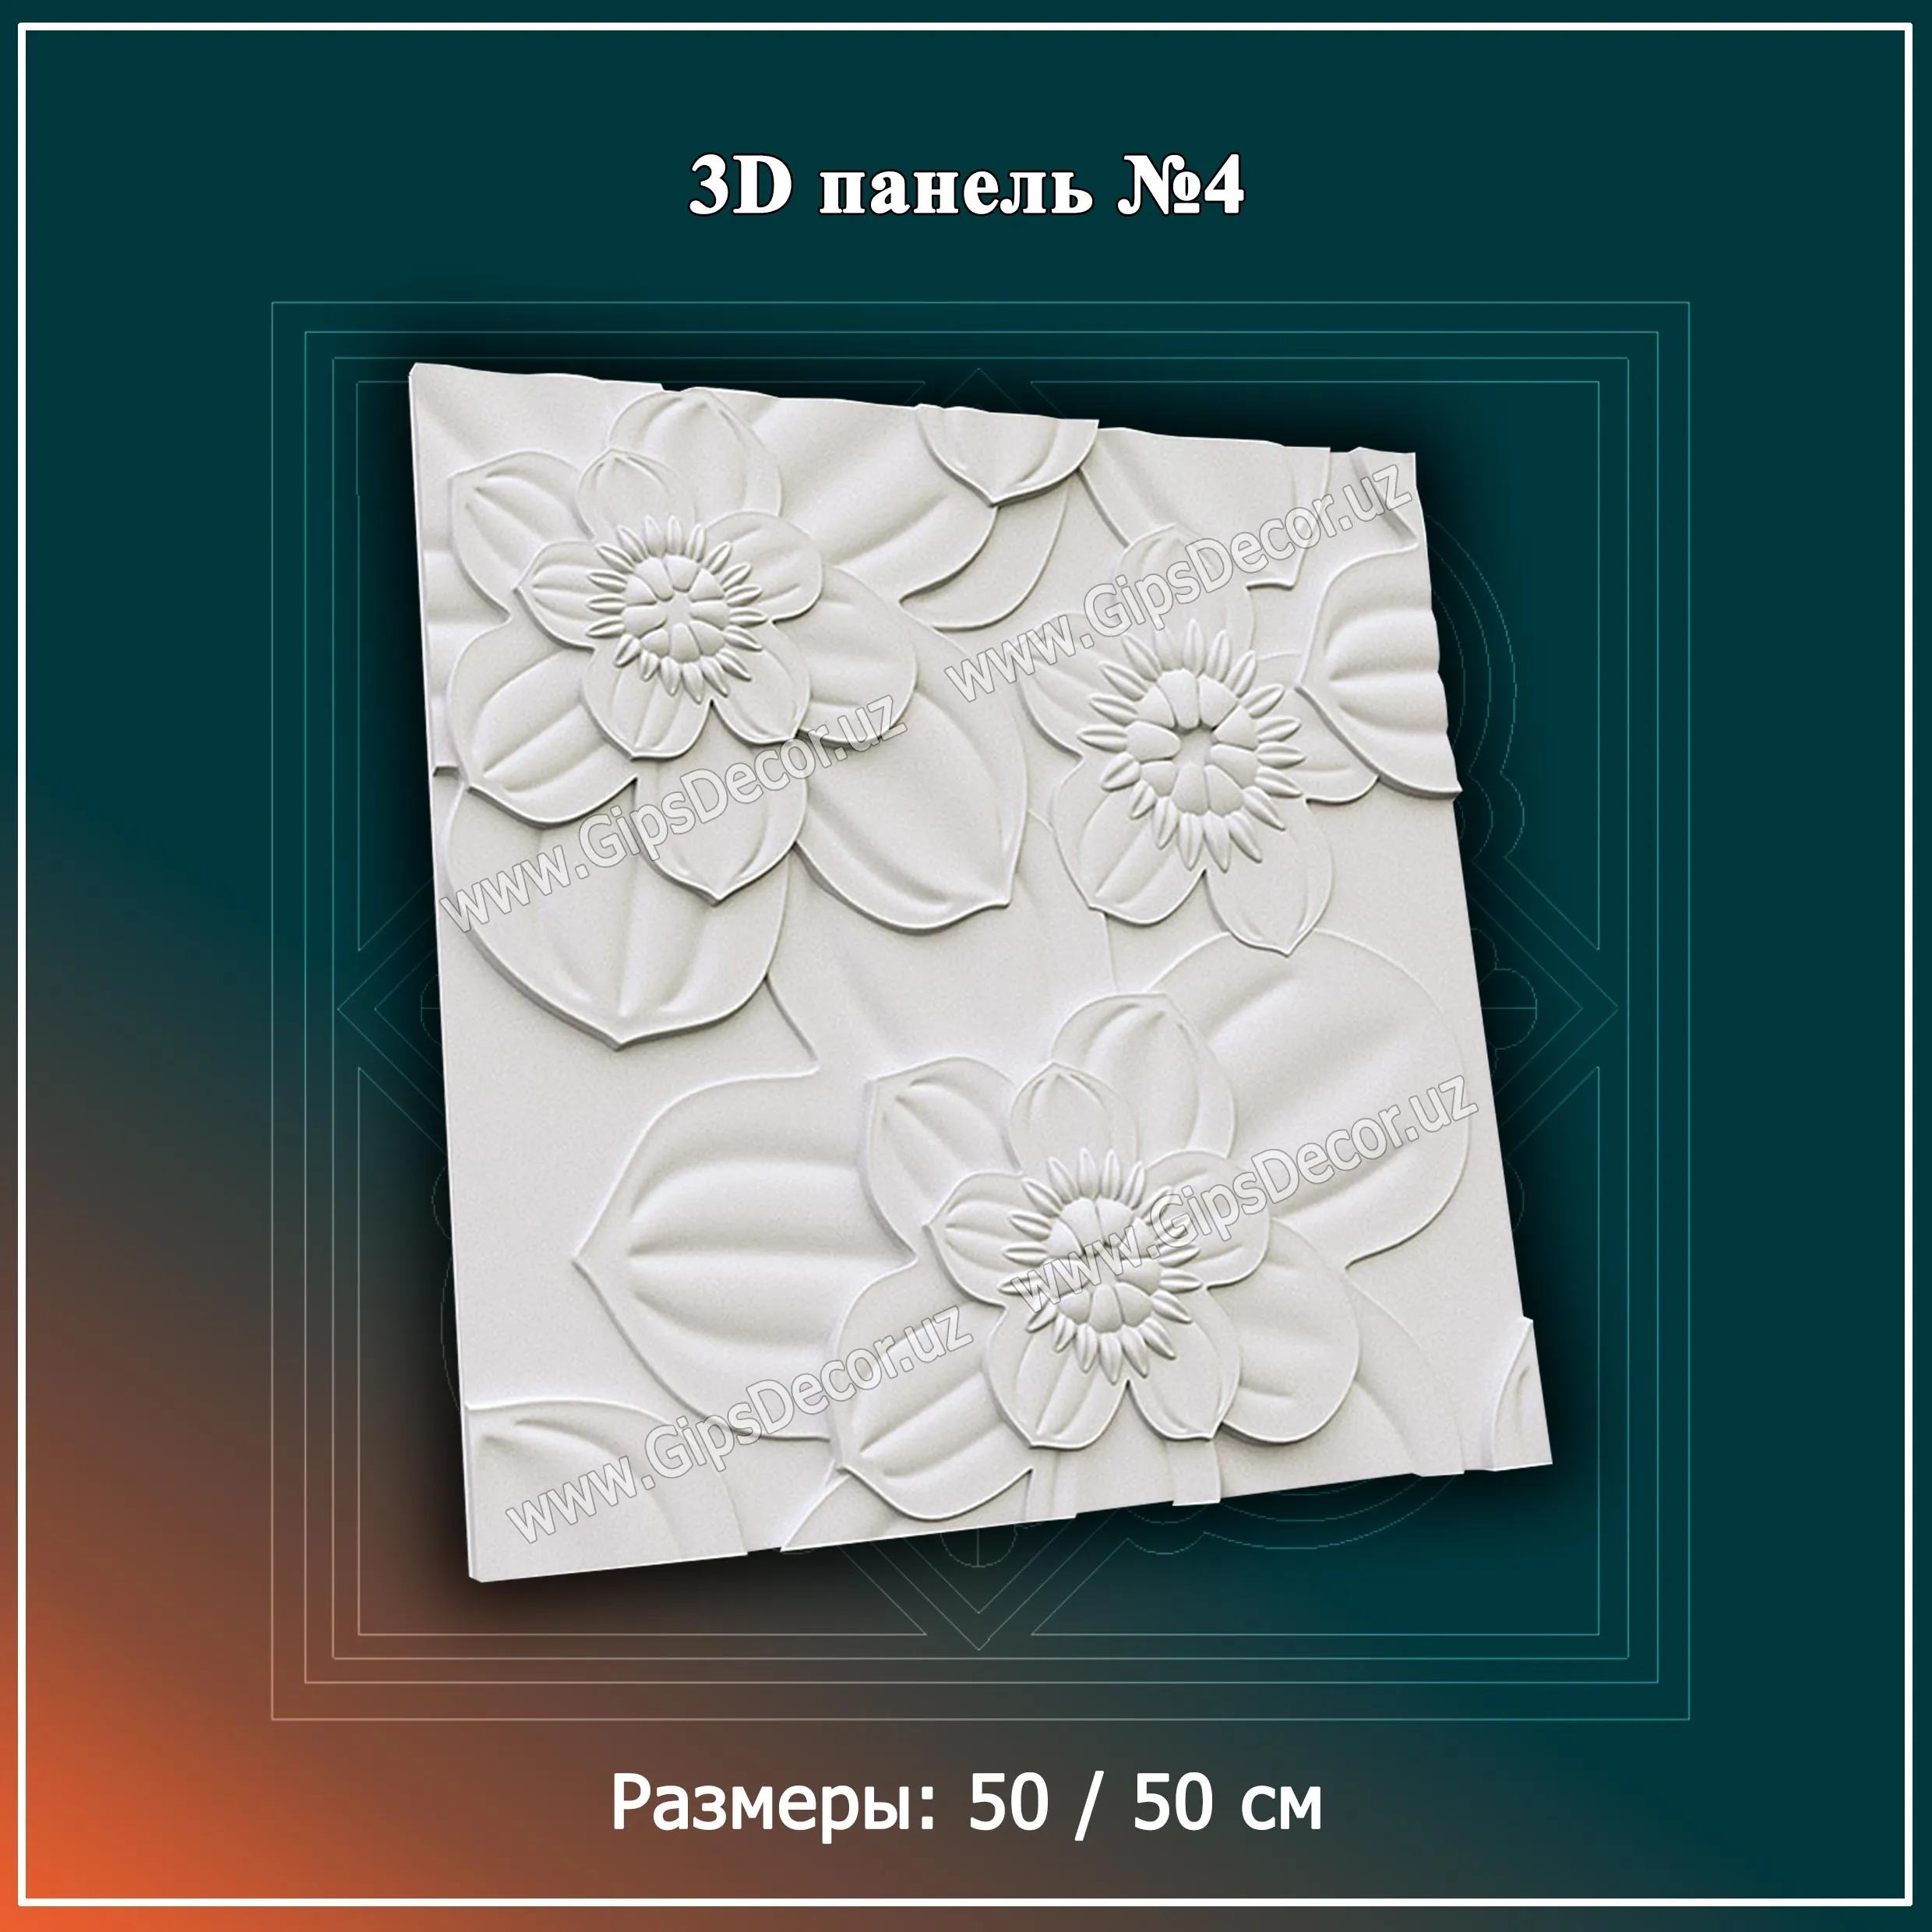 3D Панель №4 Размеры: 50 / 50 см#1